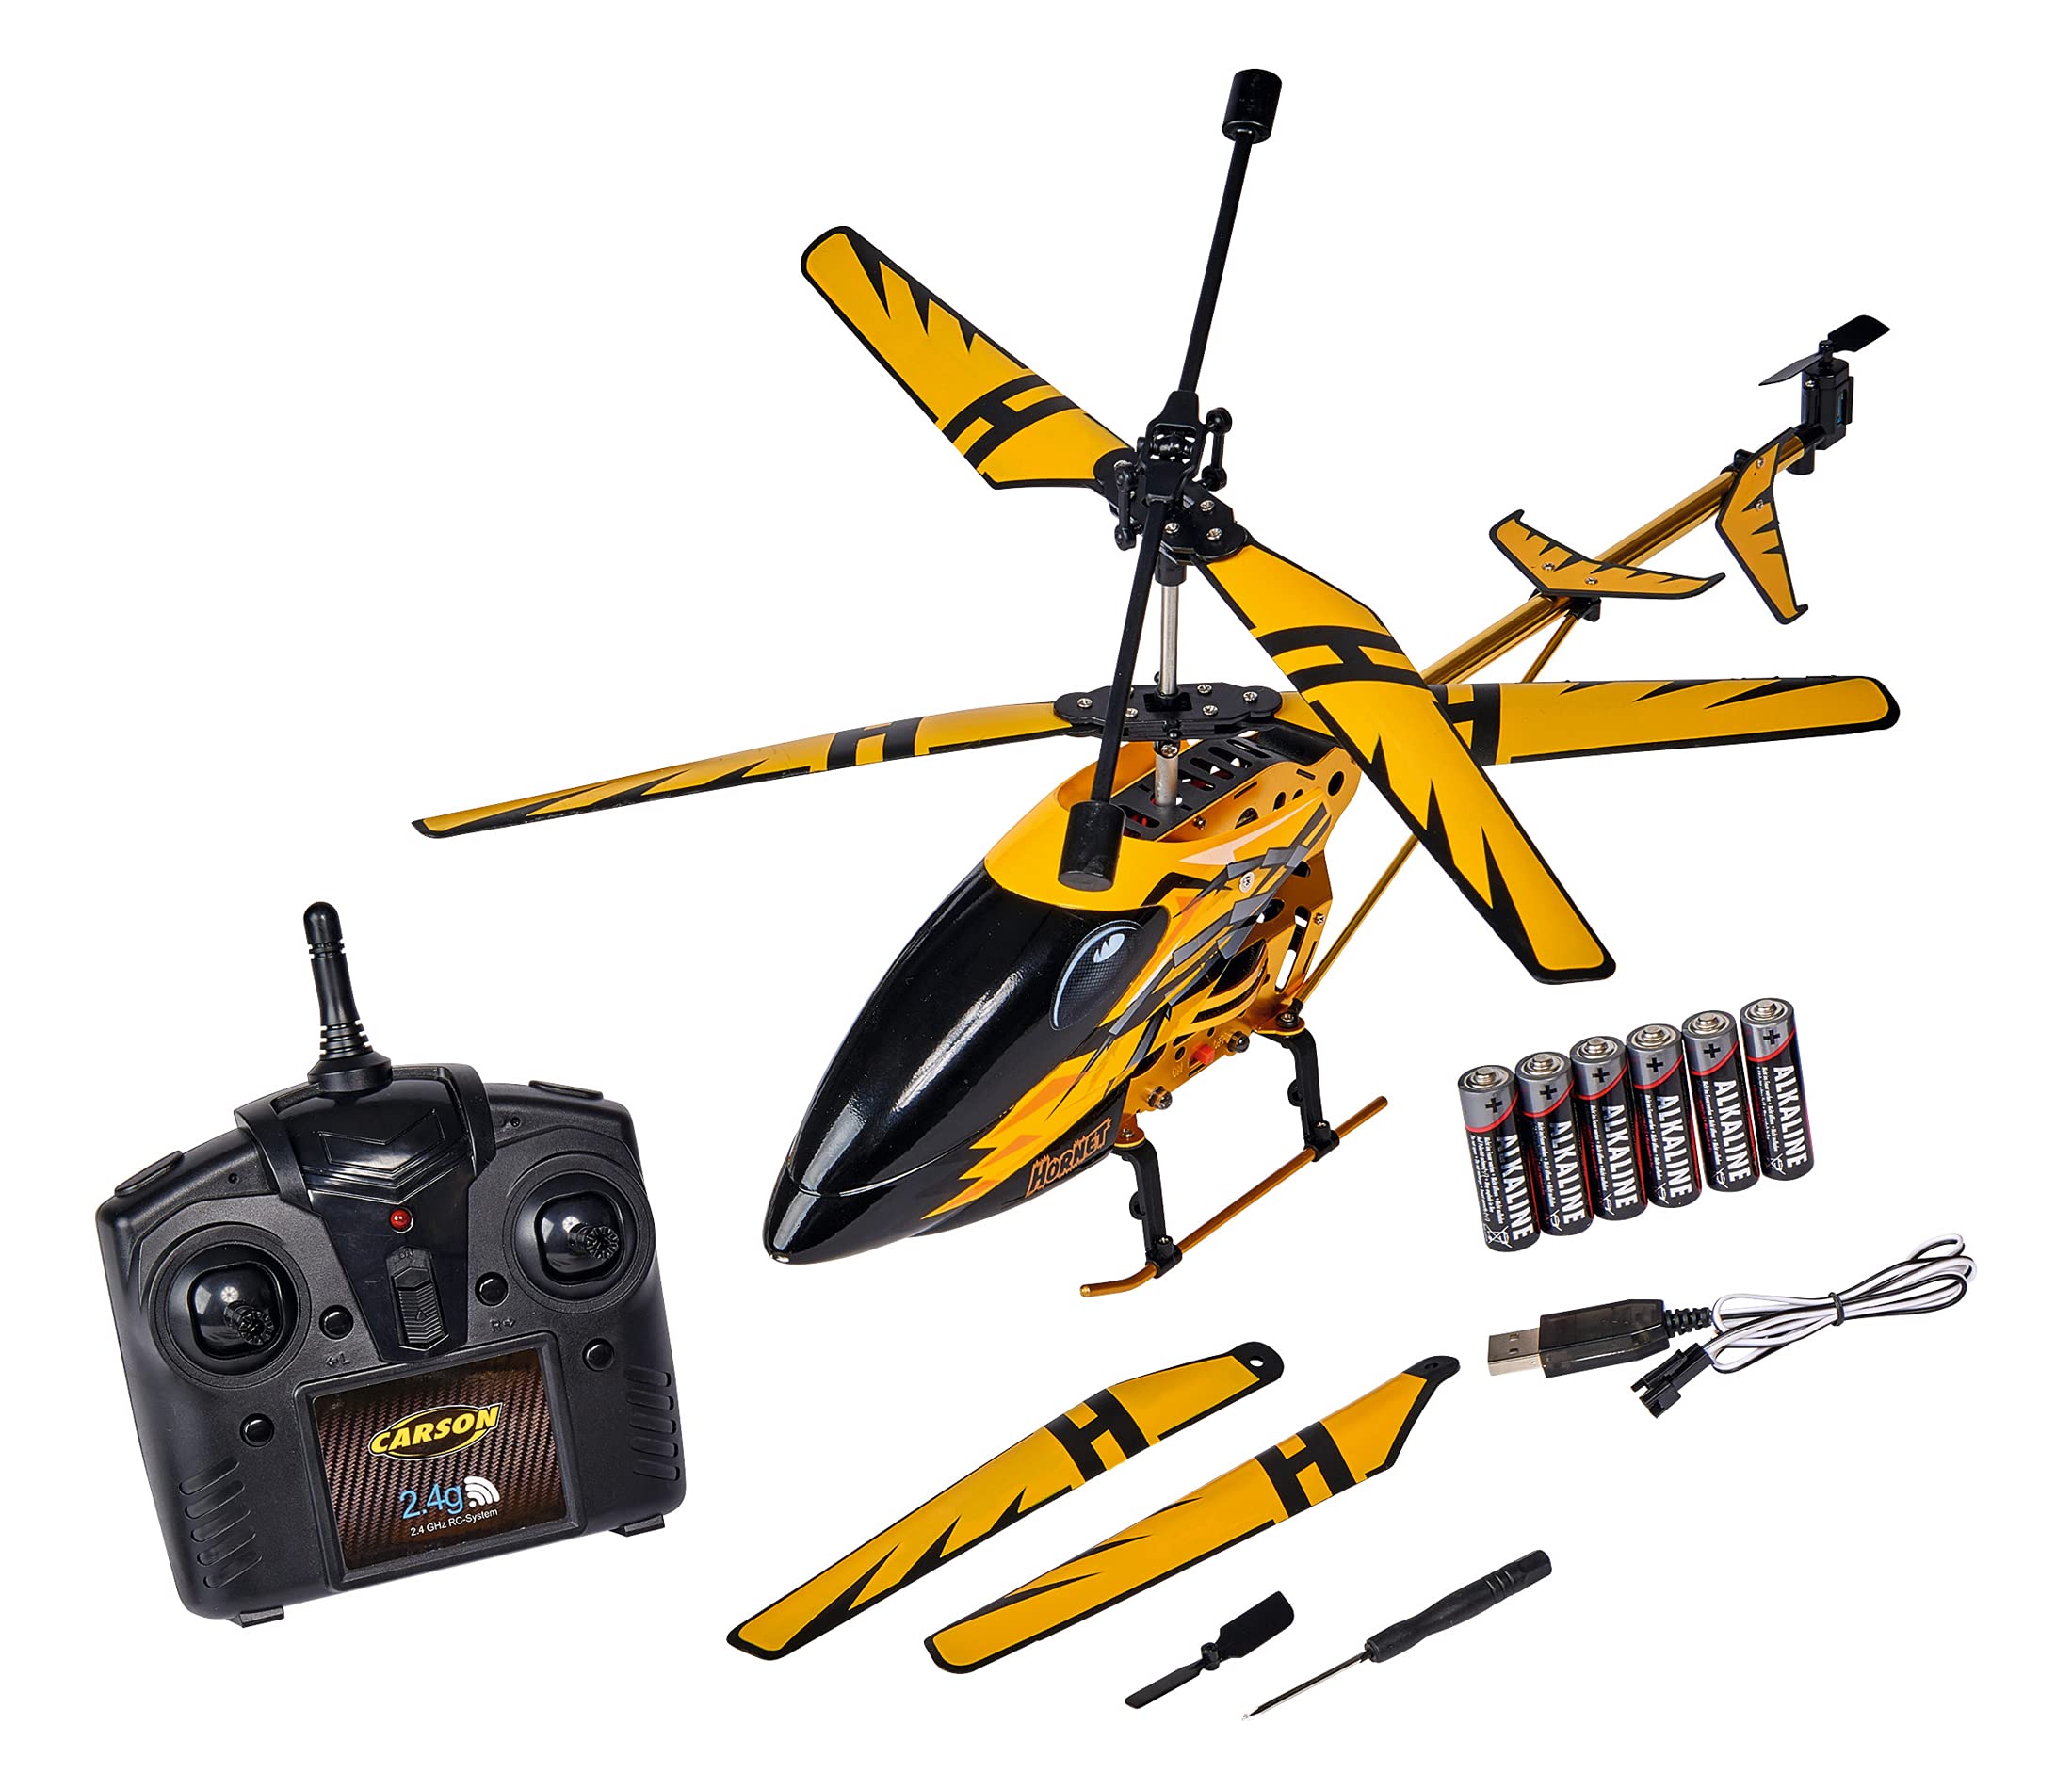 Carson 500507139 Easy Tyrann Hornet 350 2.4 GHz – Ferngesteuerter Helikopter, Robustes RTF (Ready to Fly) Modell für Einsteiger, inklusive Batterien, für Kinder ab 12 Jahren, Gelb